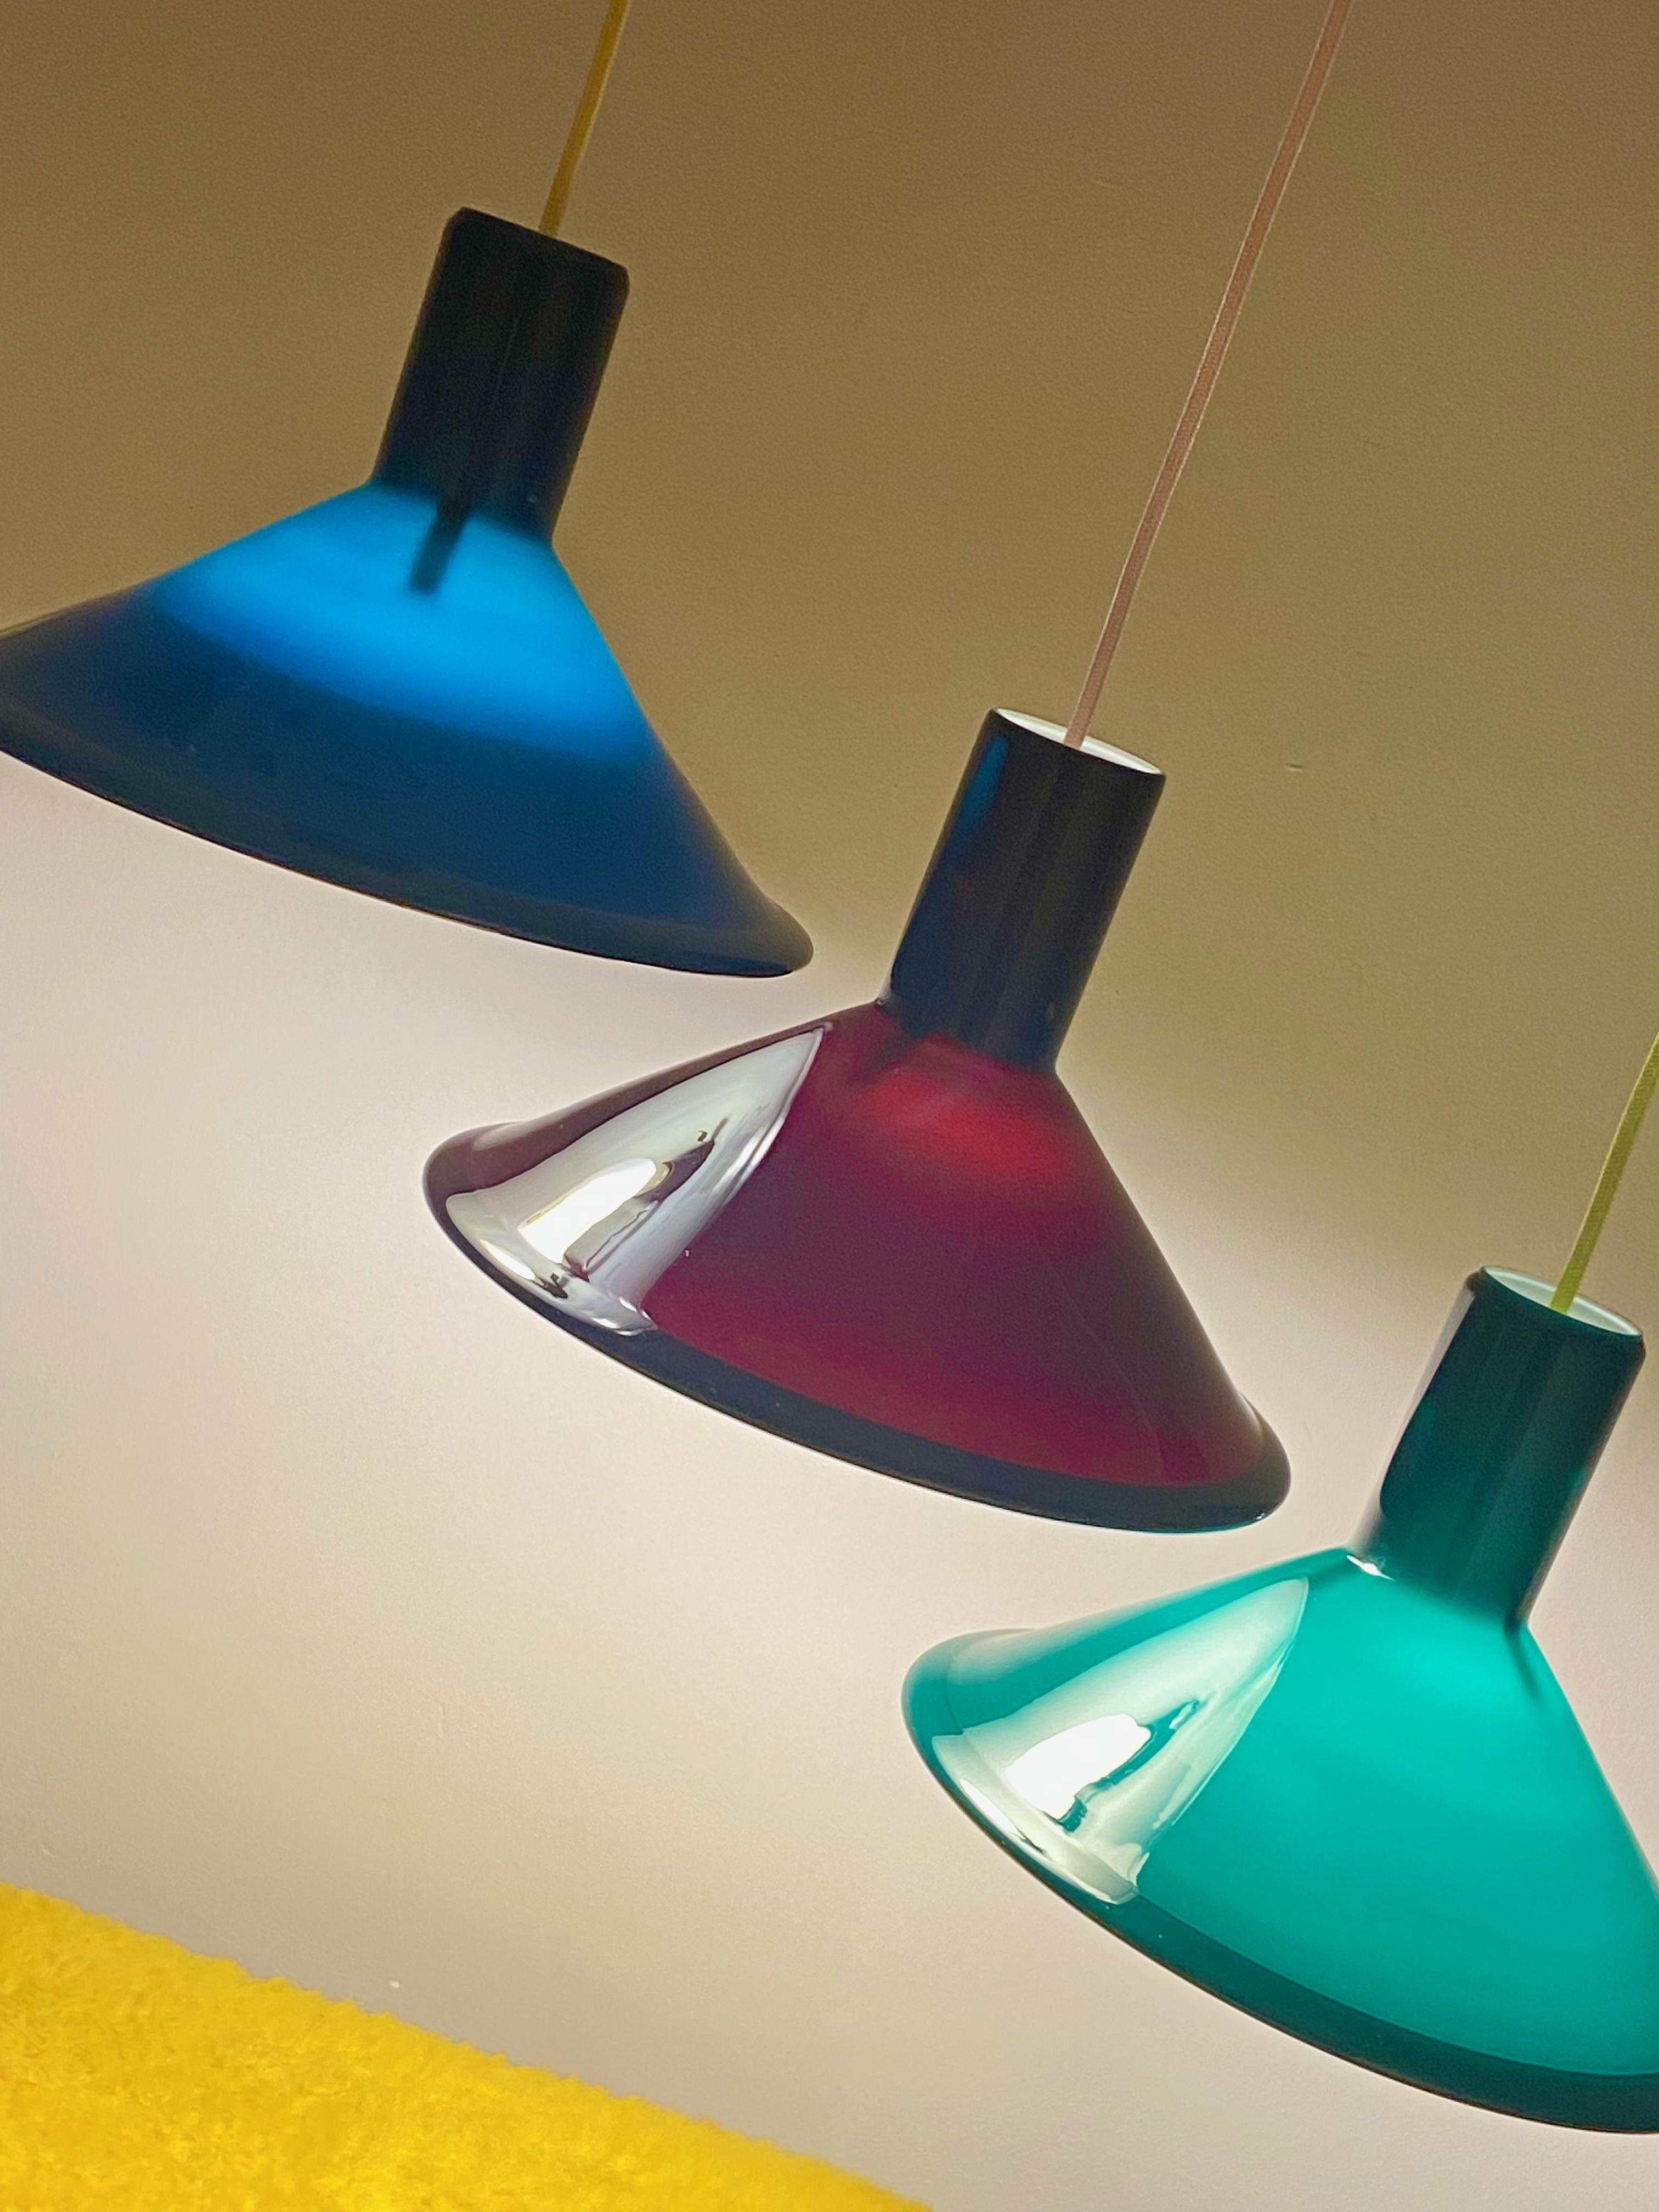 P&T-Pendelleuchte, entworfen von Michael Bang für Holmegaard in den 1970er Jahren. Diese dänische Lampe besteht aus Opalglas und ist außen dunkel auberginefarben und innen weiß. Die Lampe ist in sehr gutem Zustand, keine Schäden und kommt mit rosa